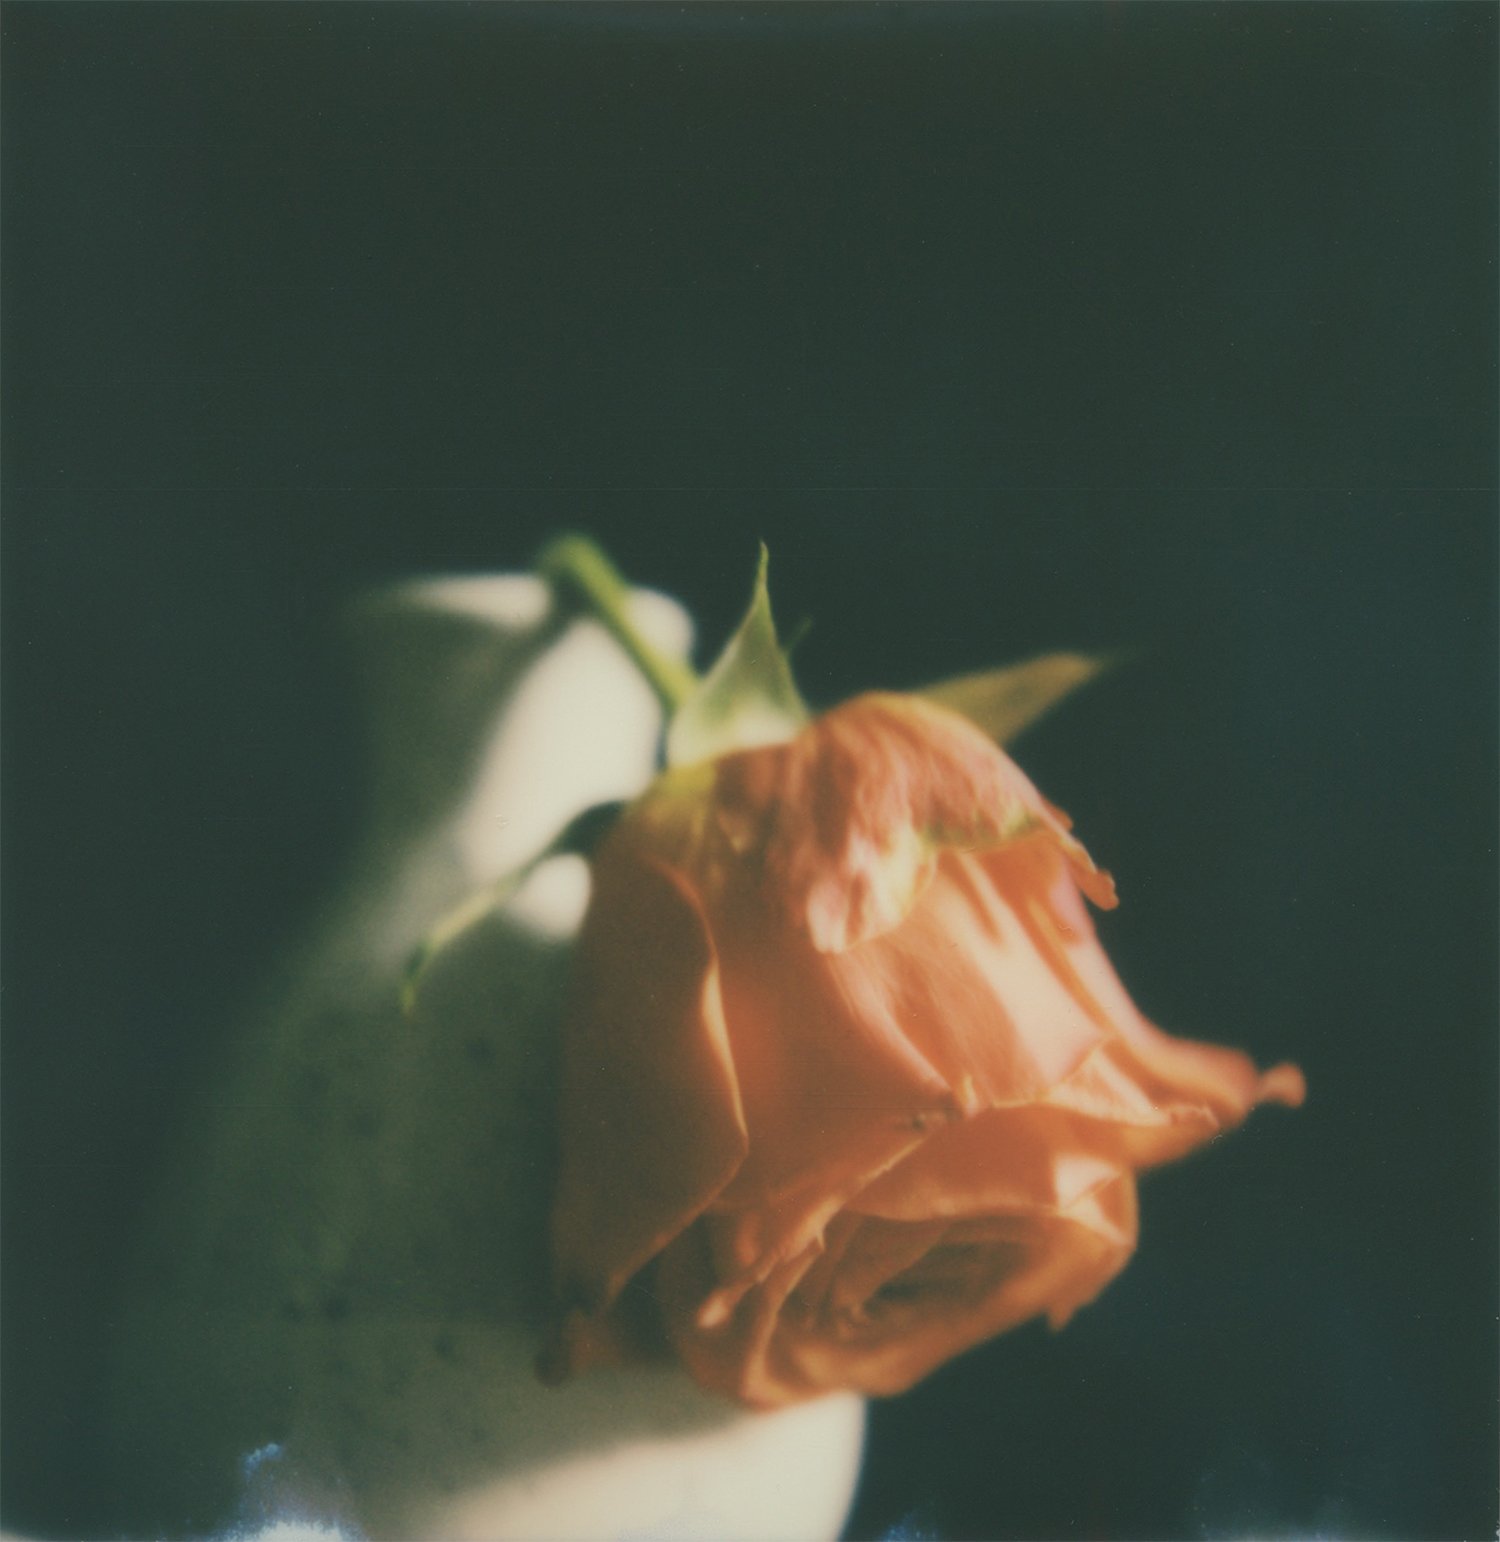  Rose Polaroid SX-70 